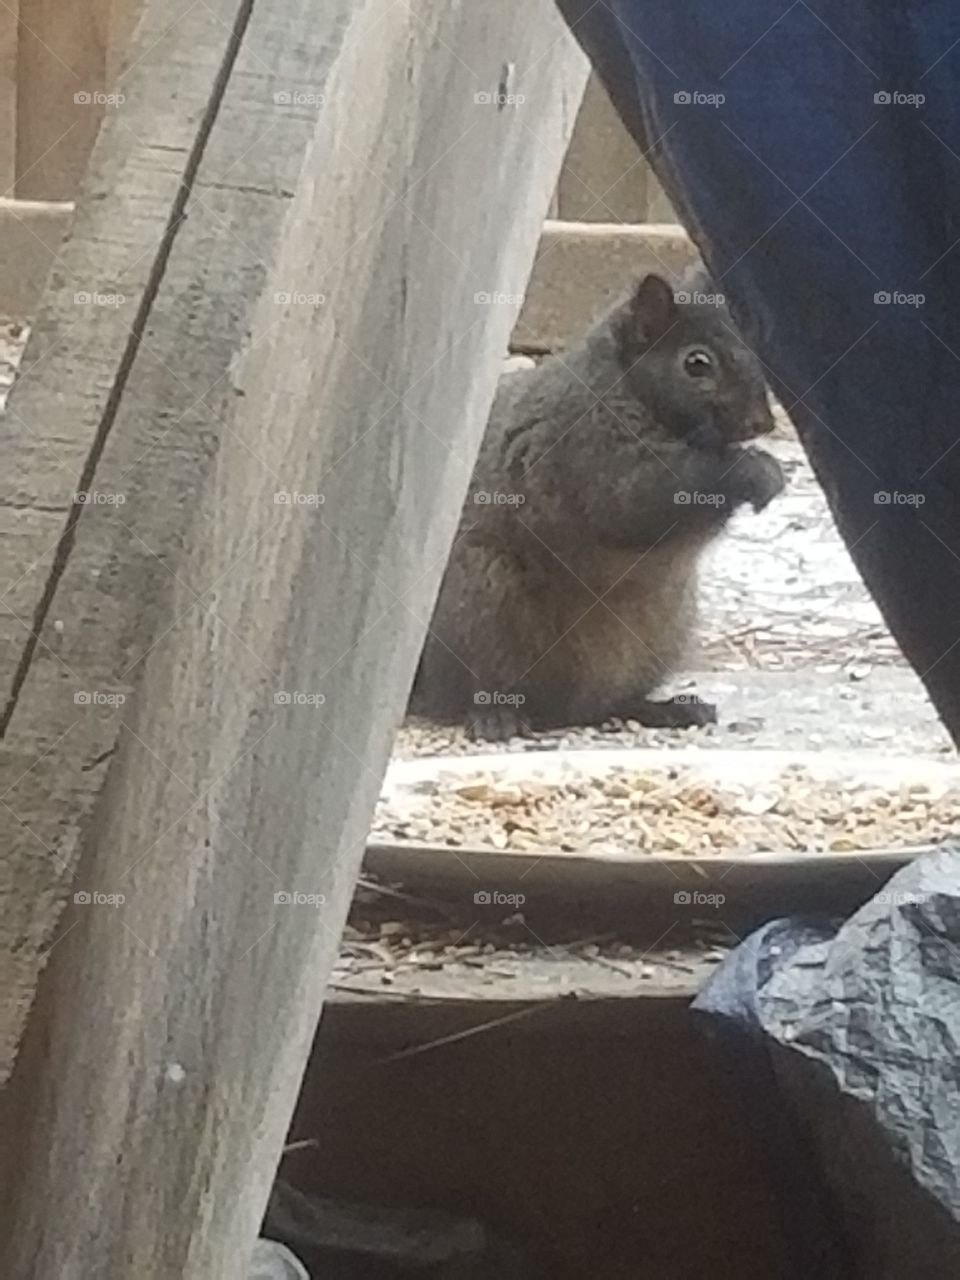 Pregnant Squirrel ♡